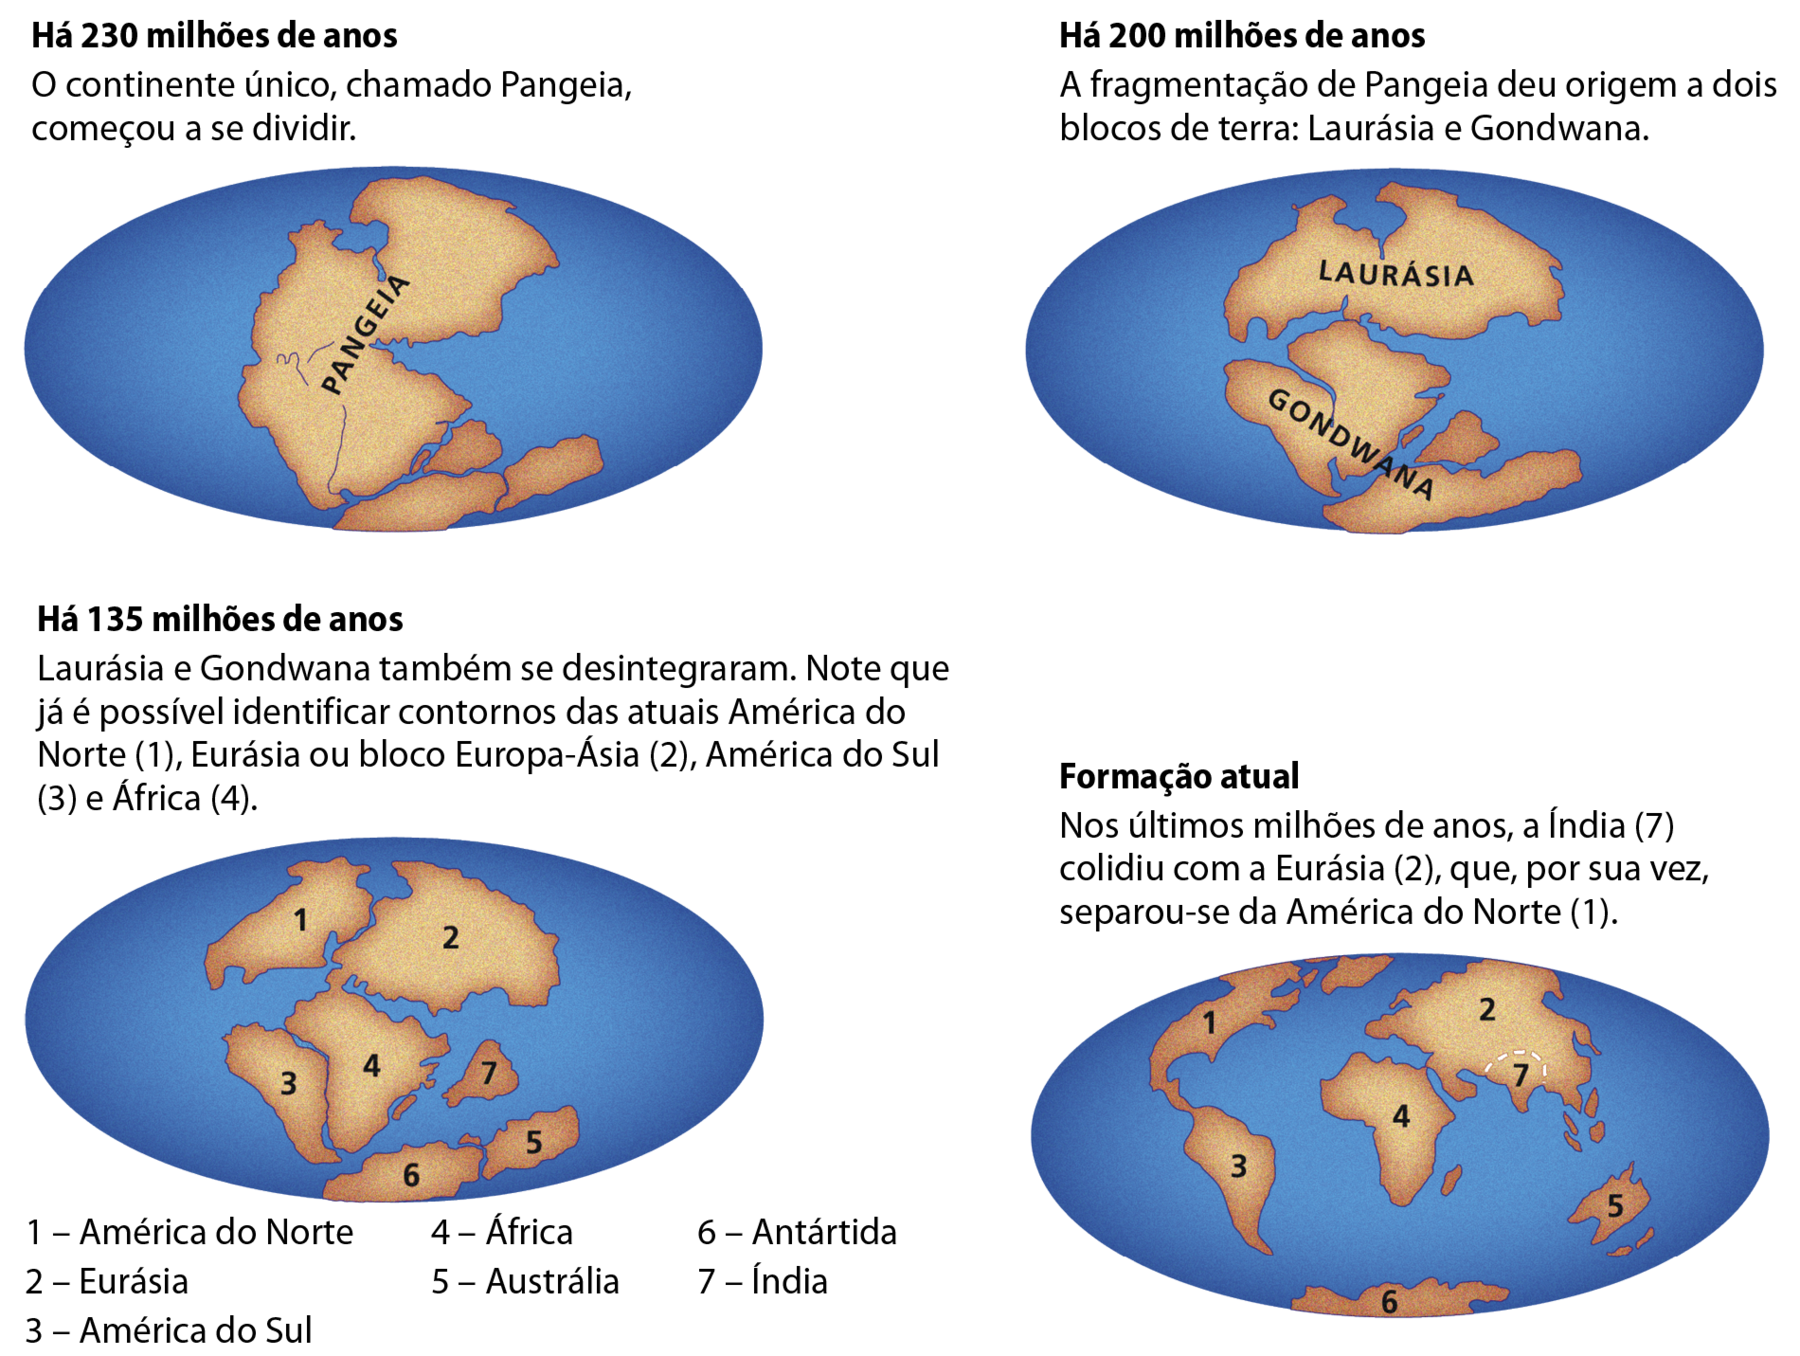 Ilustração. Continentes em formação. A superfície da Terra é representada em quatro momentos distintos: Há 230 milhões de anos, 200 milhões de anos, 135 milhões de anos e formação atual. A representação há 230 milhões de anos está no canto superior à esquerda, e mostra um bloco marrom representando um continente sobre o oceano, que está em azul. No centro desse continente está escrito Pangeia, em preto. Texto explicativo: Há 230 milhões de anos, o continente único, chamado Pangeia, começou a se dividir. A representação há 200 milhões de anos está no canto superior à direita e mostra o continente dividido em dois blocos sobre os oceano. No bloco acima e ao centro está escrito Laurásia, em preto. O bloco da parte de baixo tem o nome de Gondwana. Texto explicativo: Há 200 milhões de anos, a fragmentação de Pangeia deu origem a dois blocos de terra: Laurásia e Gondwana. A representação há 135 milhões de anos mostra a fragmentação do bloco em 7 partes que ainda estão próximas umas das outras. Texto explicativo: Há 135 milhões de anos Laurásia e Gondwana também se desintegraram. Nesse momento já é possível identificar contornos das atuais América do Norte (1), Eurásia ou bloco Europa-Ásia (2), América do Sul (3) e África (4). 1: América do Norte 2: Eurásia 3: América do Sul 4: África 5: Austrália 6: Antártida 7: Índia A formação atual mostra os continentes numerados da mesma forma que a representação há 135 milhões de anos. Porém, a posição de cada continente é a mesma verificada atualmente. Texto explicativo: Nos últimos milhões de anos, a Índia (7) colidiu com a Eurásia (2), que, por sua vez, separou-se da América do Norte (1).